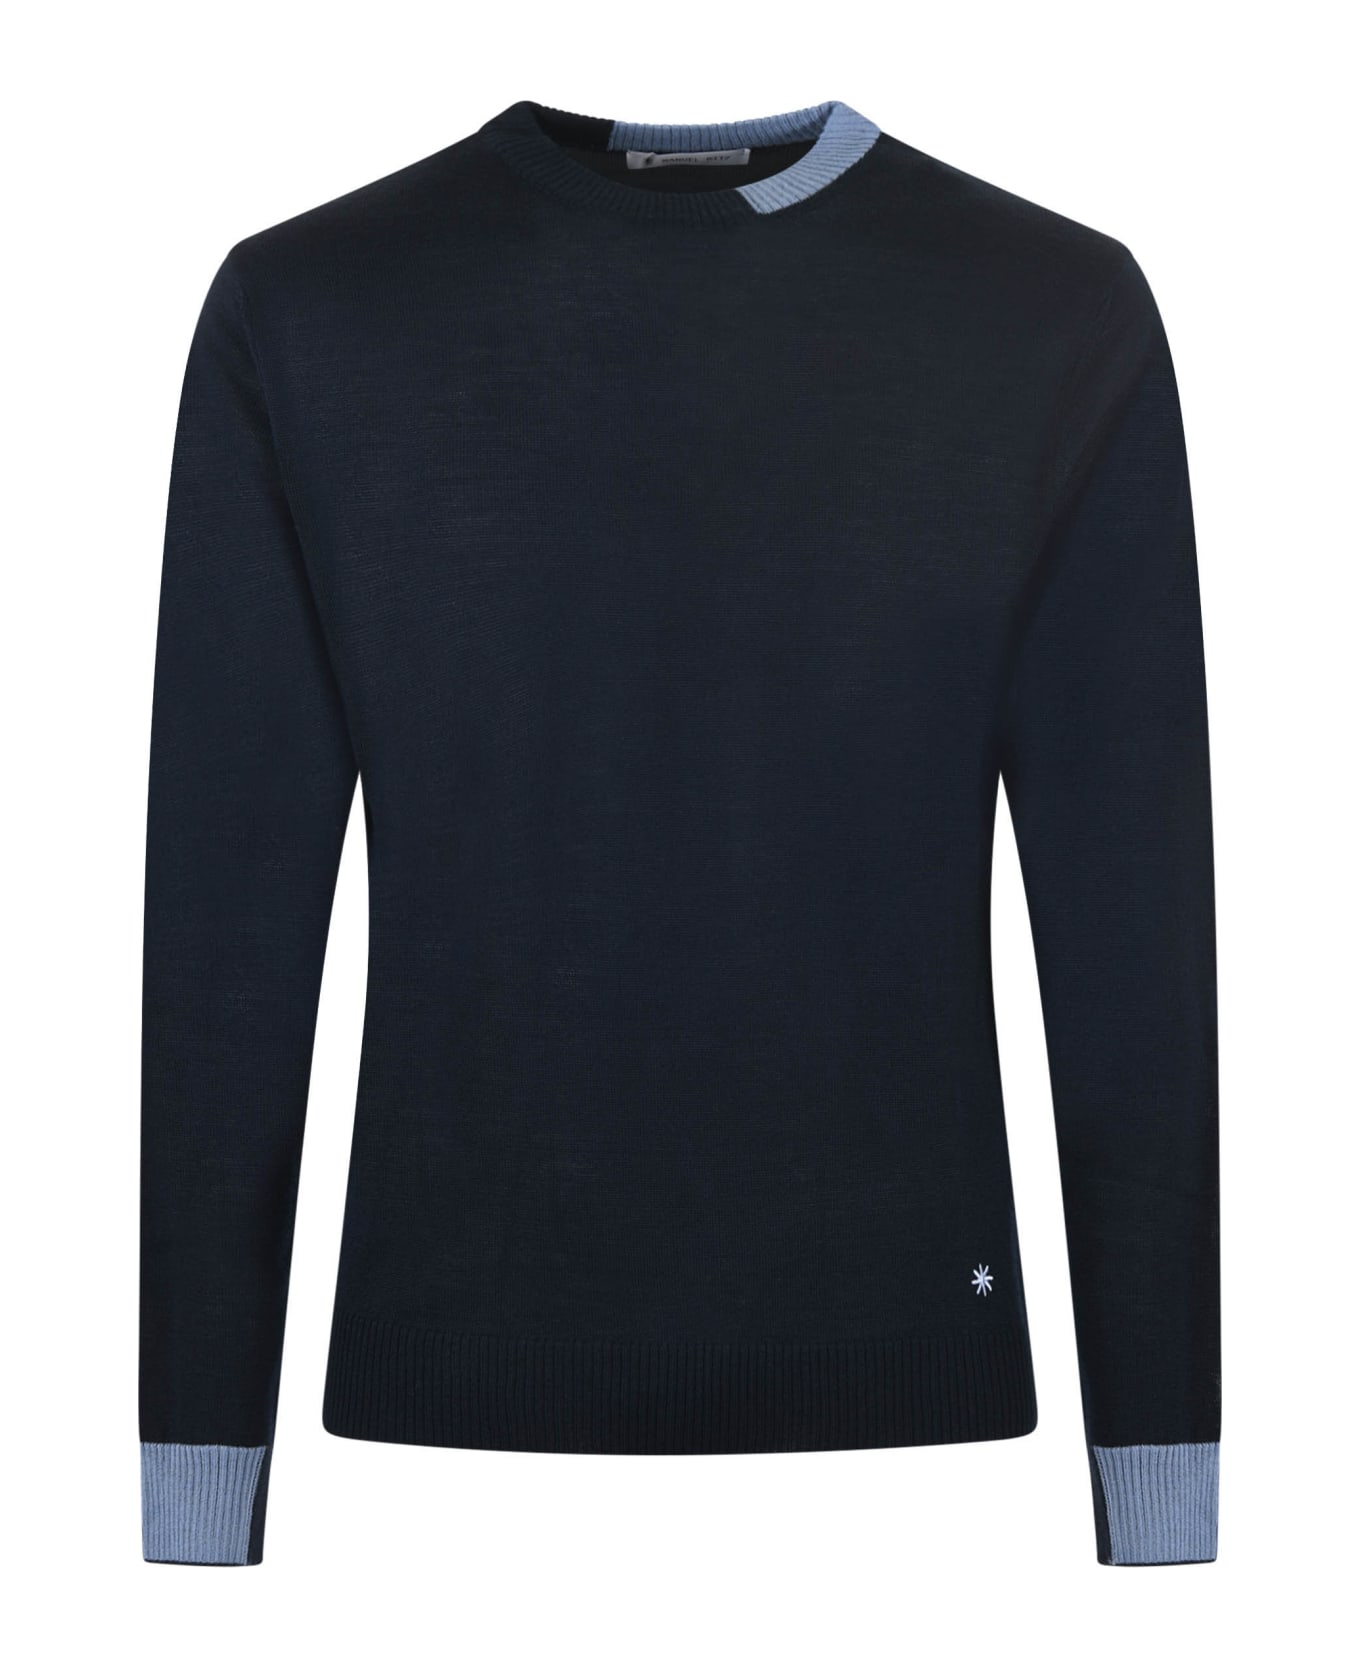 Manuel Ritz Sweater - Blu scuro